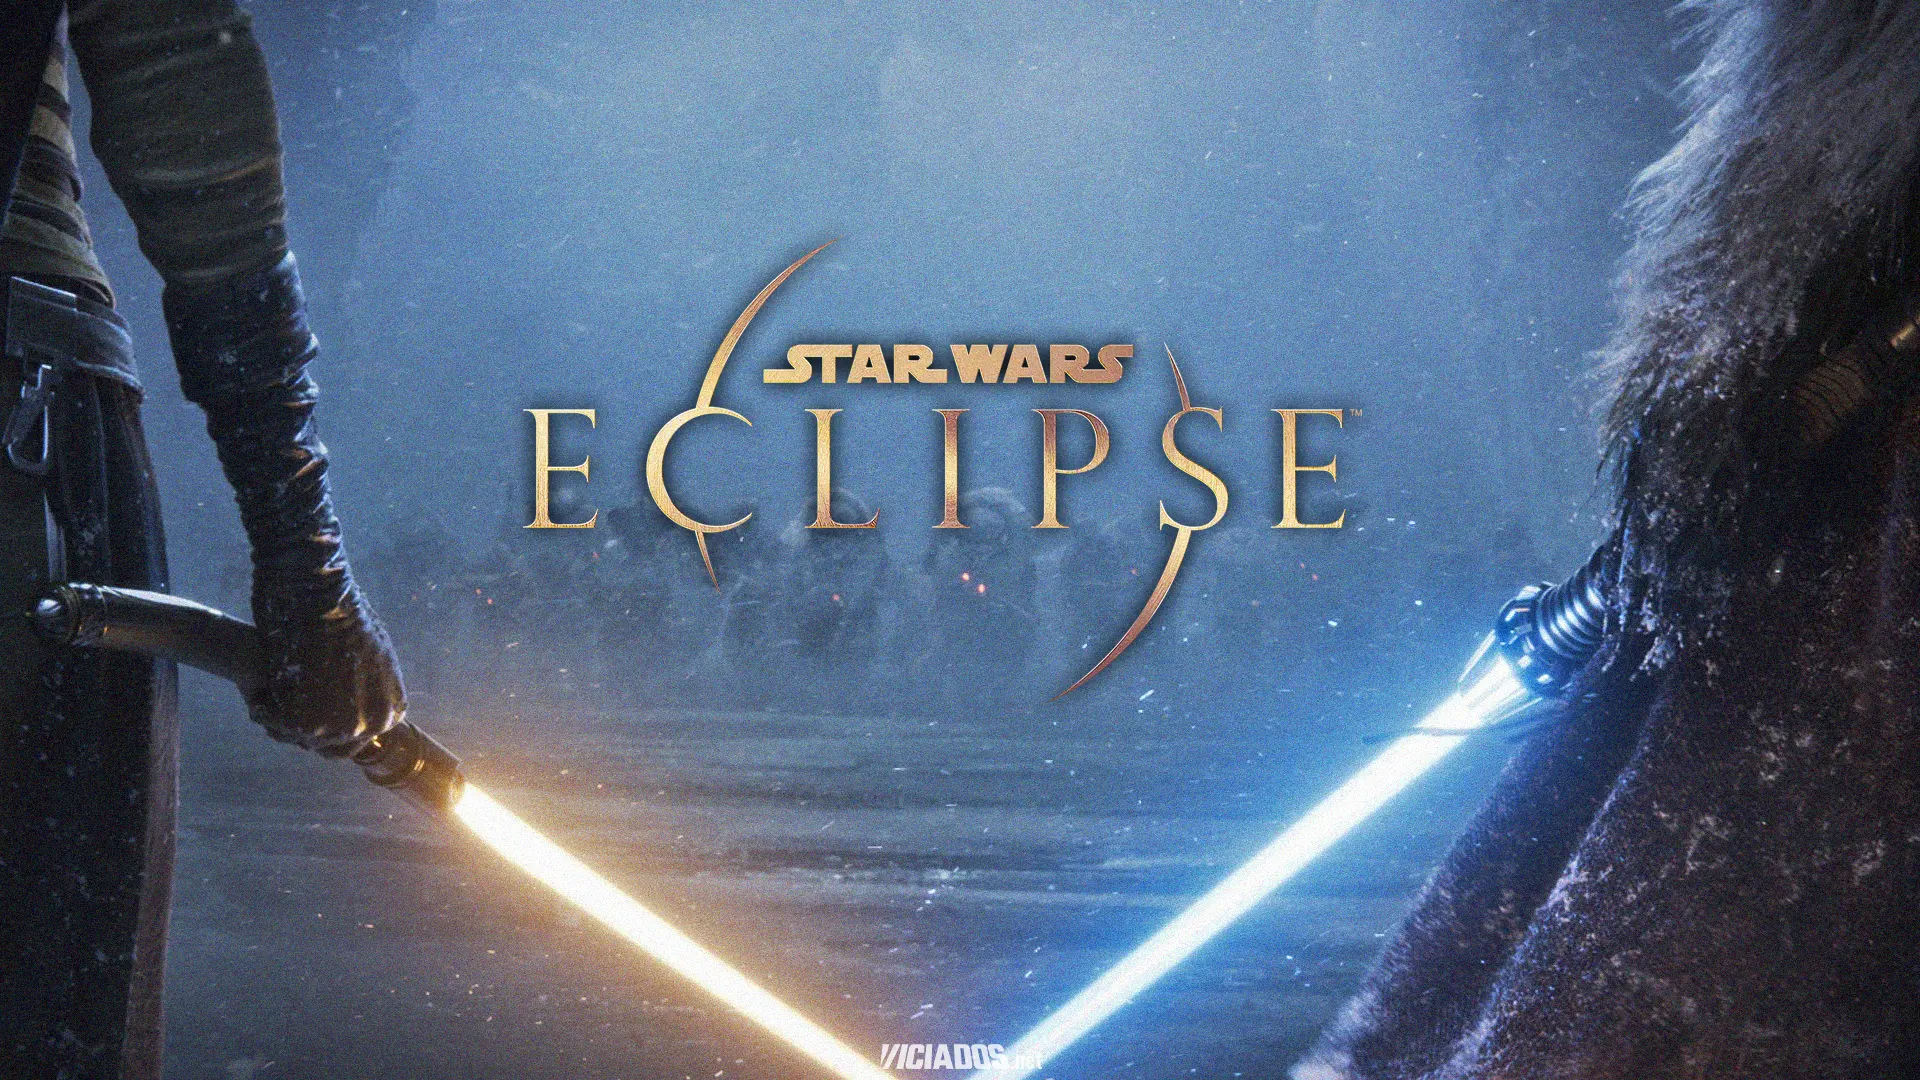 Star Wars Eclipse, da Quantic Dream, recebe possível janela de lançamento 2023 Viciados